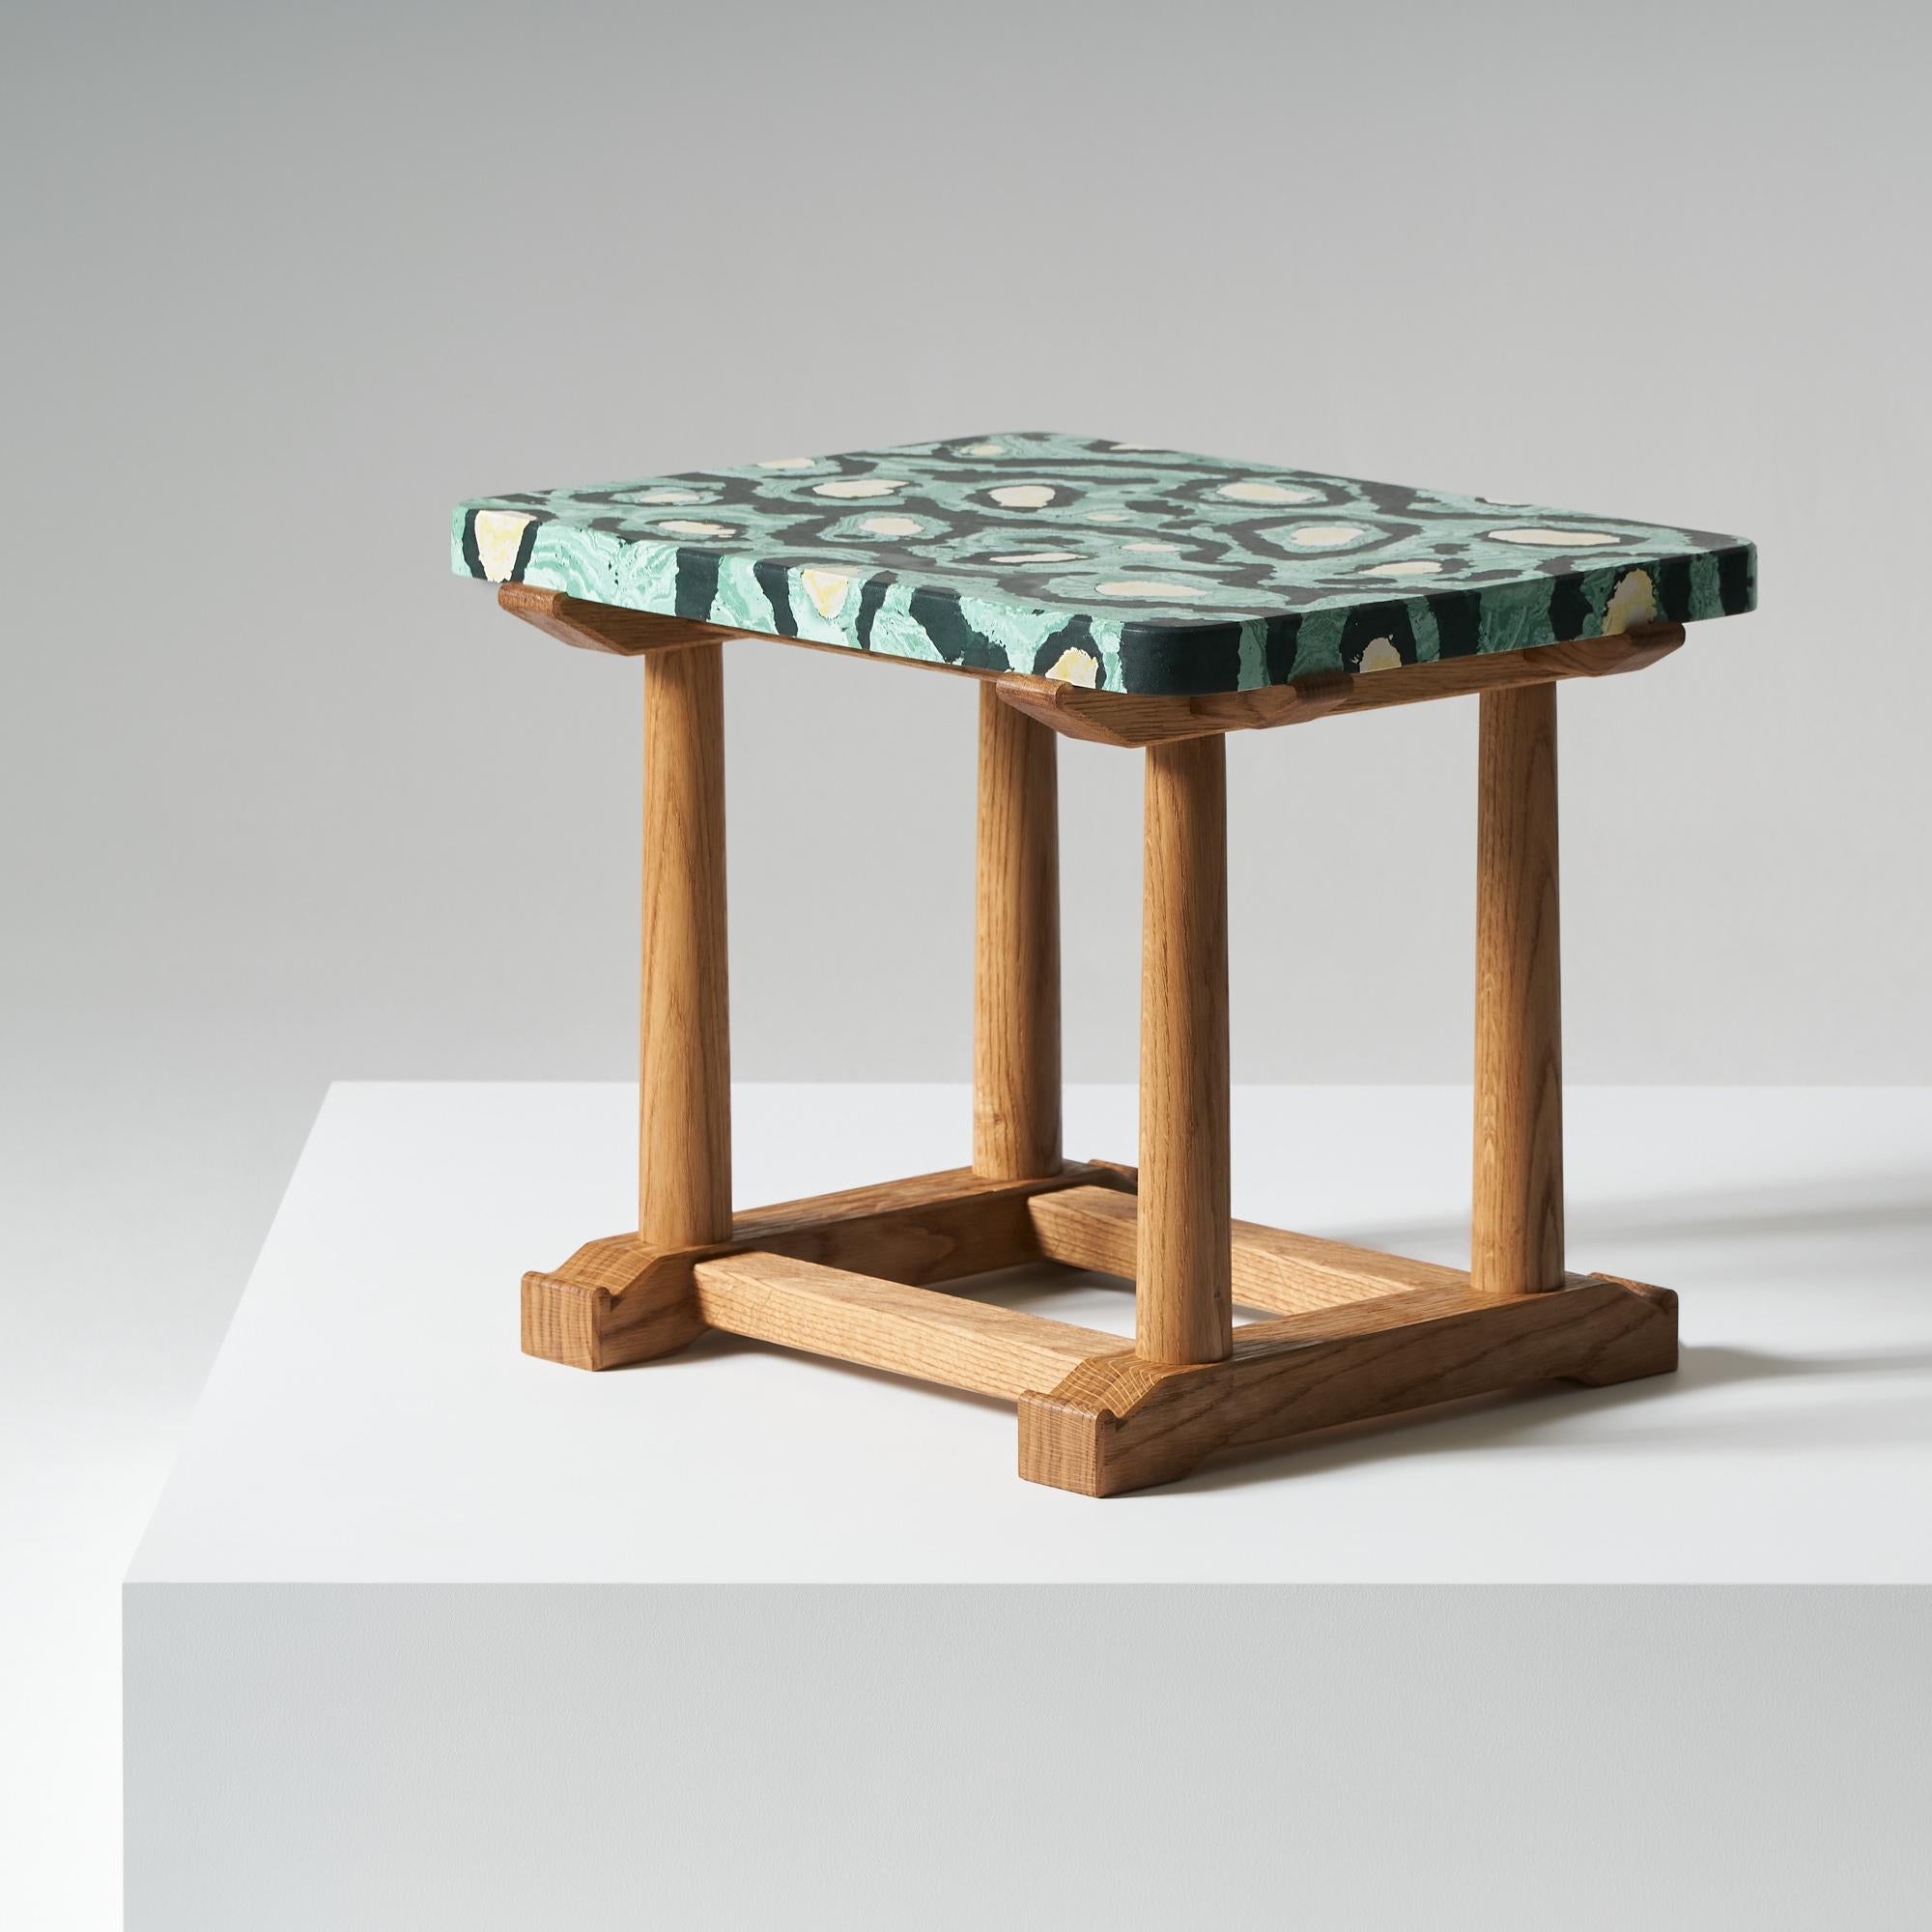 And objects, studio de design de produits fondé par Martin Brudnizki et Nick Jeanes et basé à Londres.

La table d'appoint Bighton est dotée d'une base en chêne anglais brossé, fabriquée par l'un de nos artisans britanniques spécialisés. Le